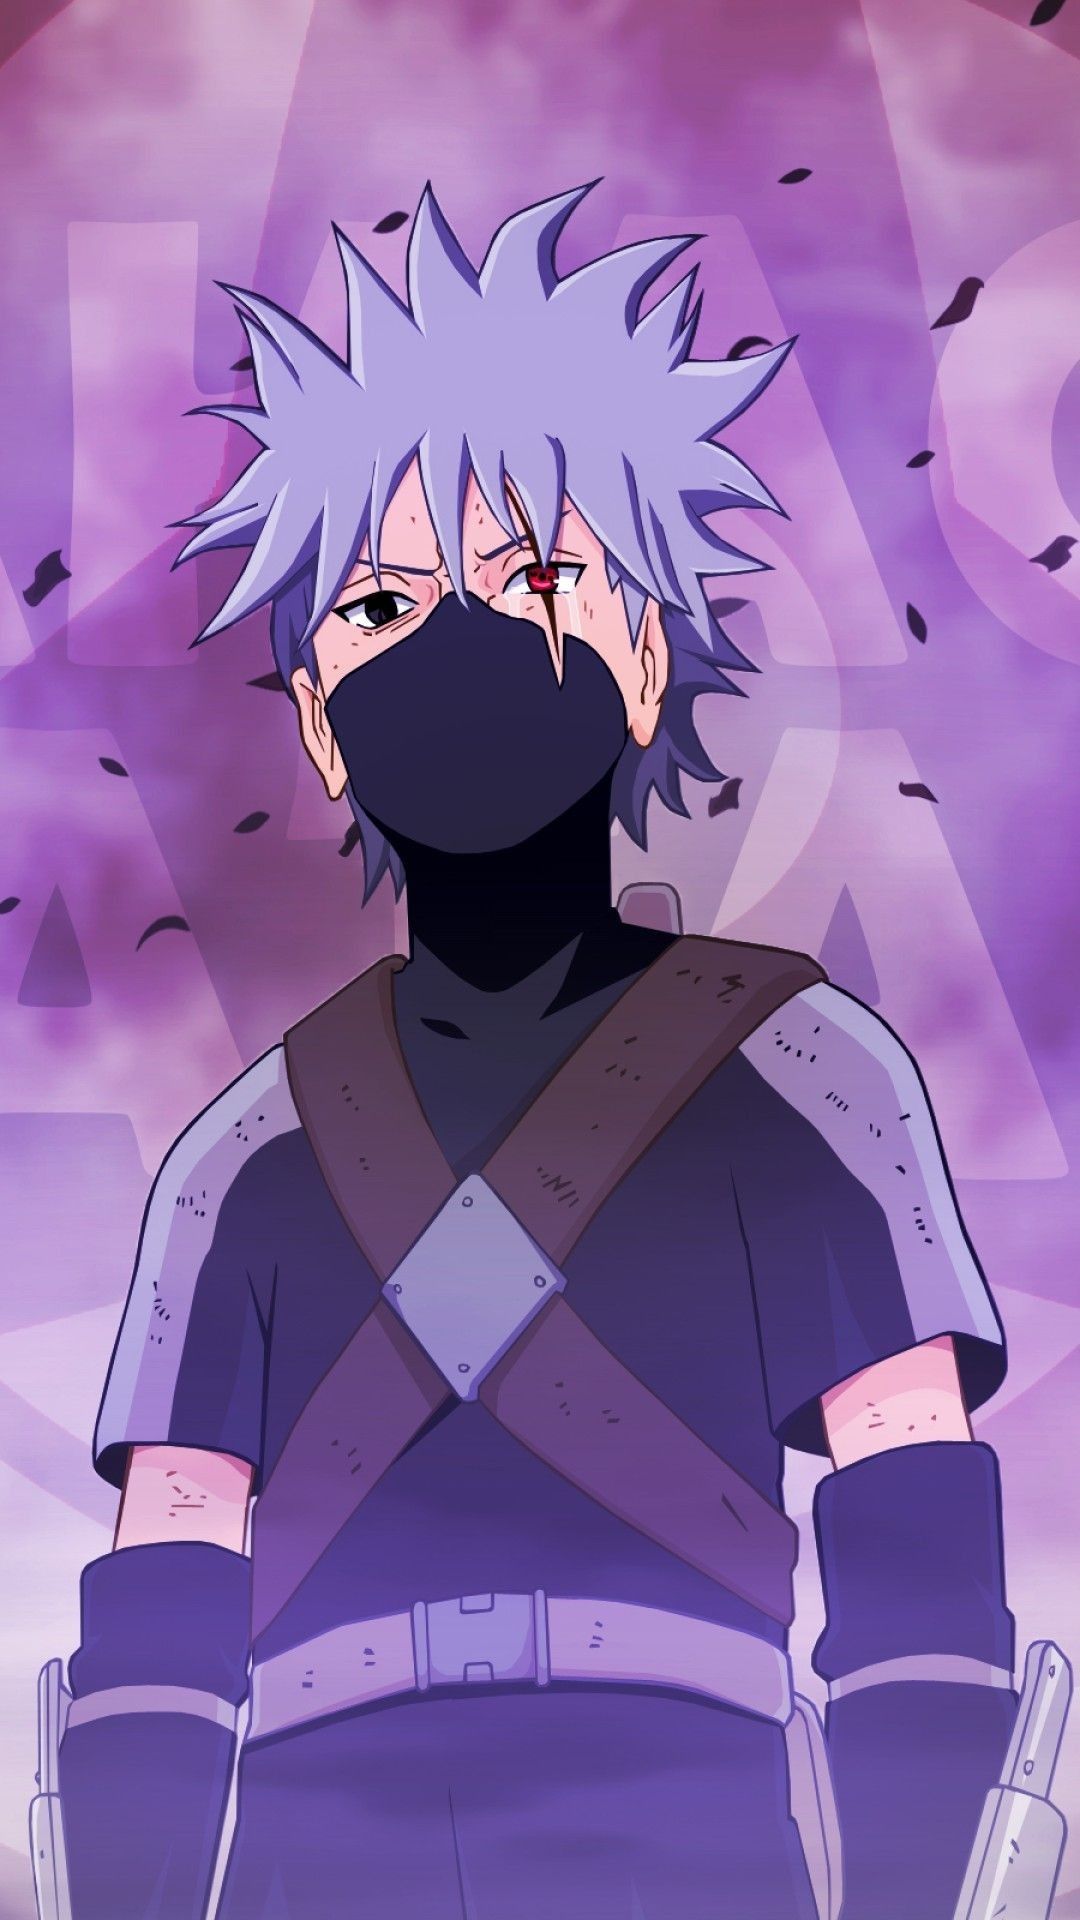 Hãy cùng tiếp tục khám phá về Kakashi, một trong những ninja bậc thầy trong Naruto. Hình ảnh sẽ giúp bạn hiểu rõ hơn về tính cách của nhân vật này.